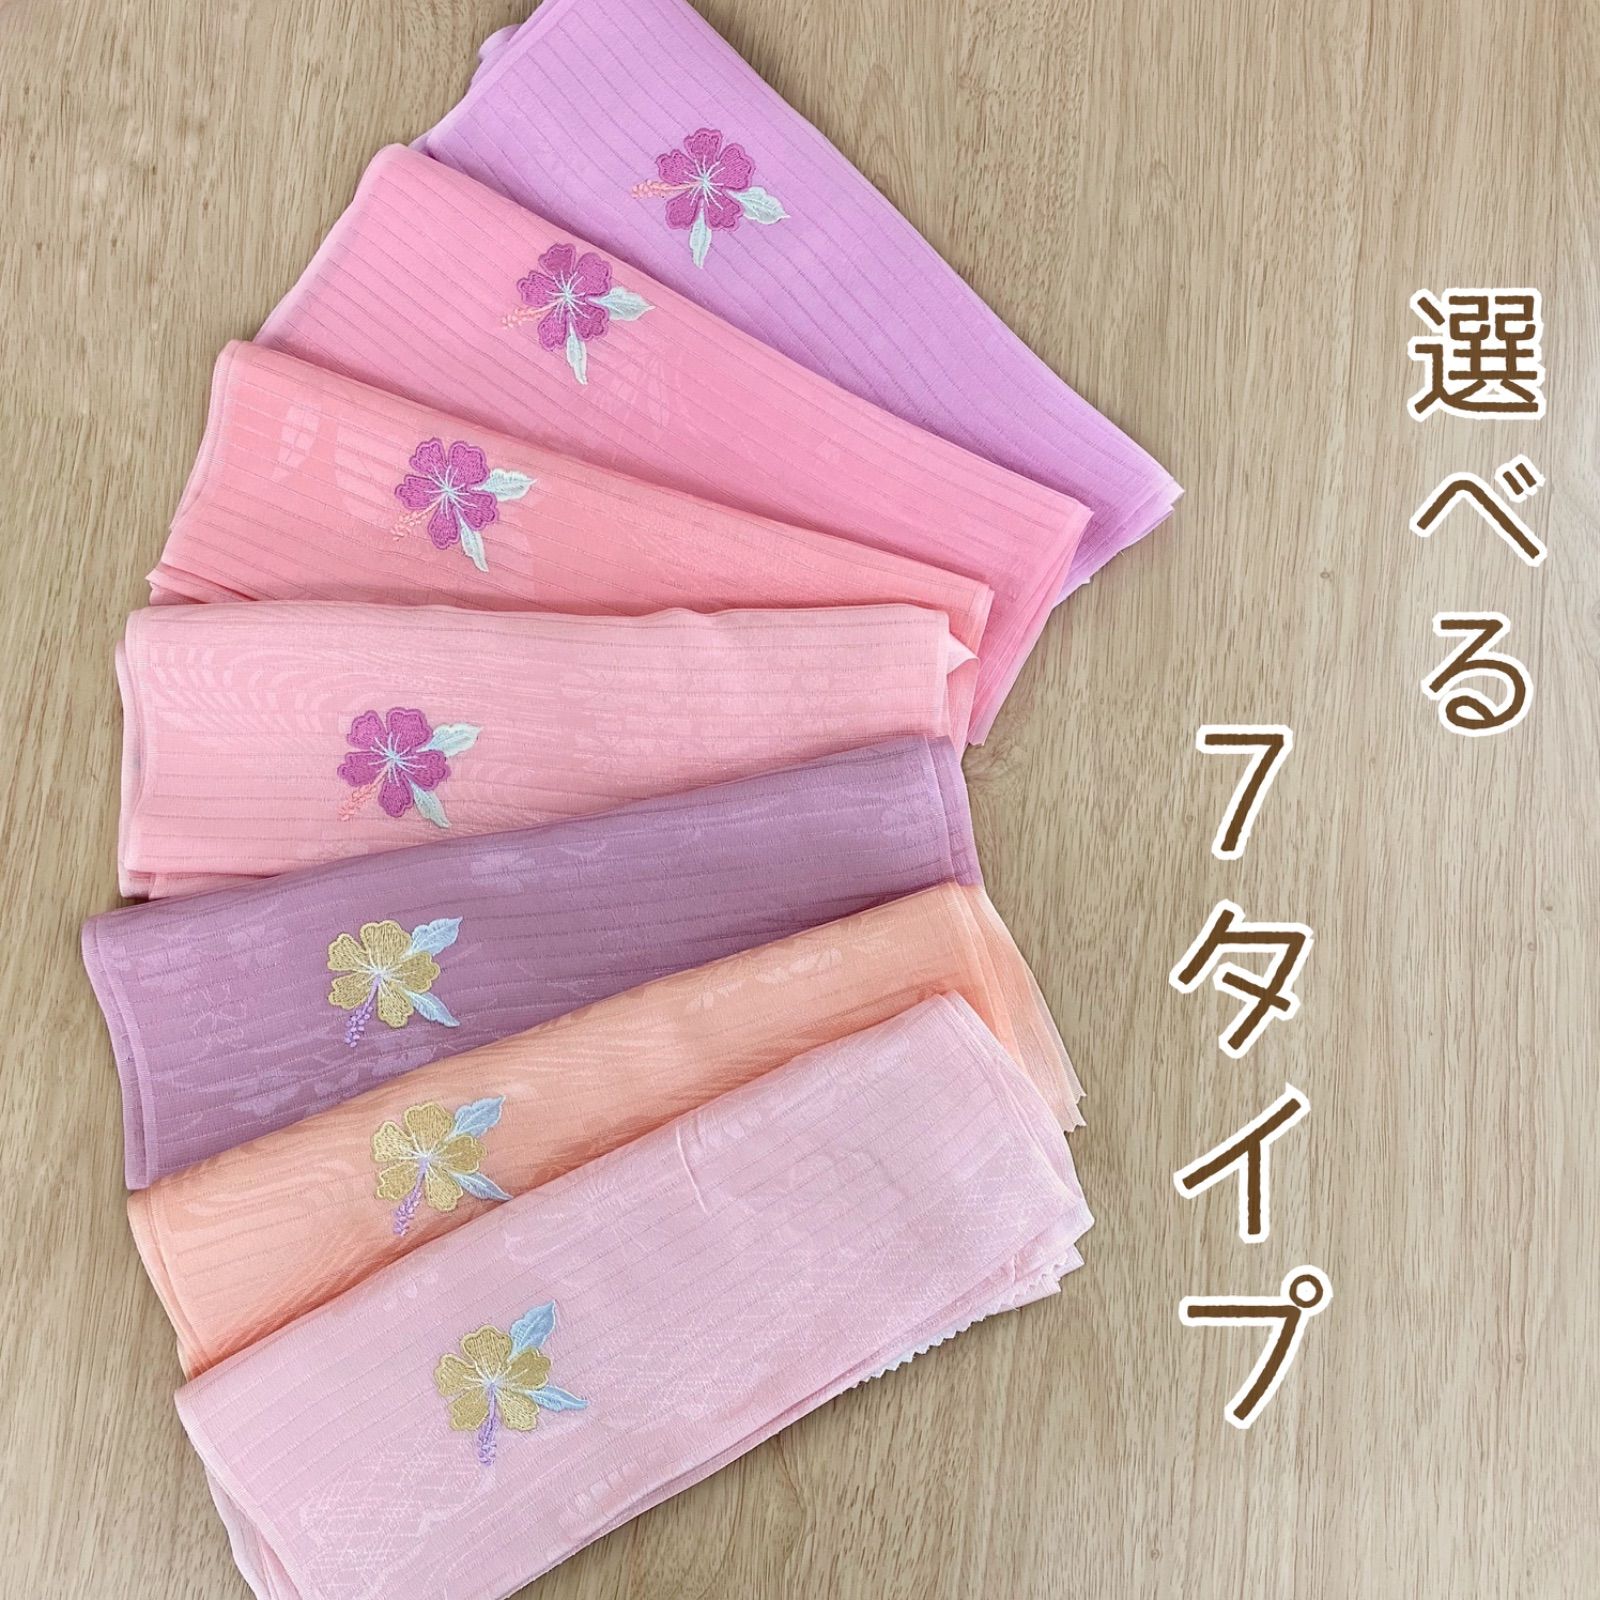 新品 夏物 特価 正絹 絽 帯揚げ ハイビスカス 刺繍 7TYPE soax006